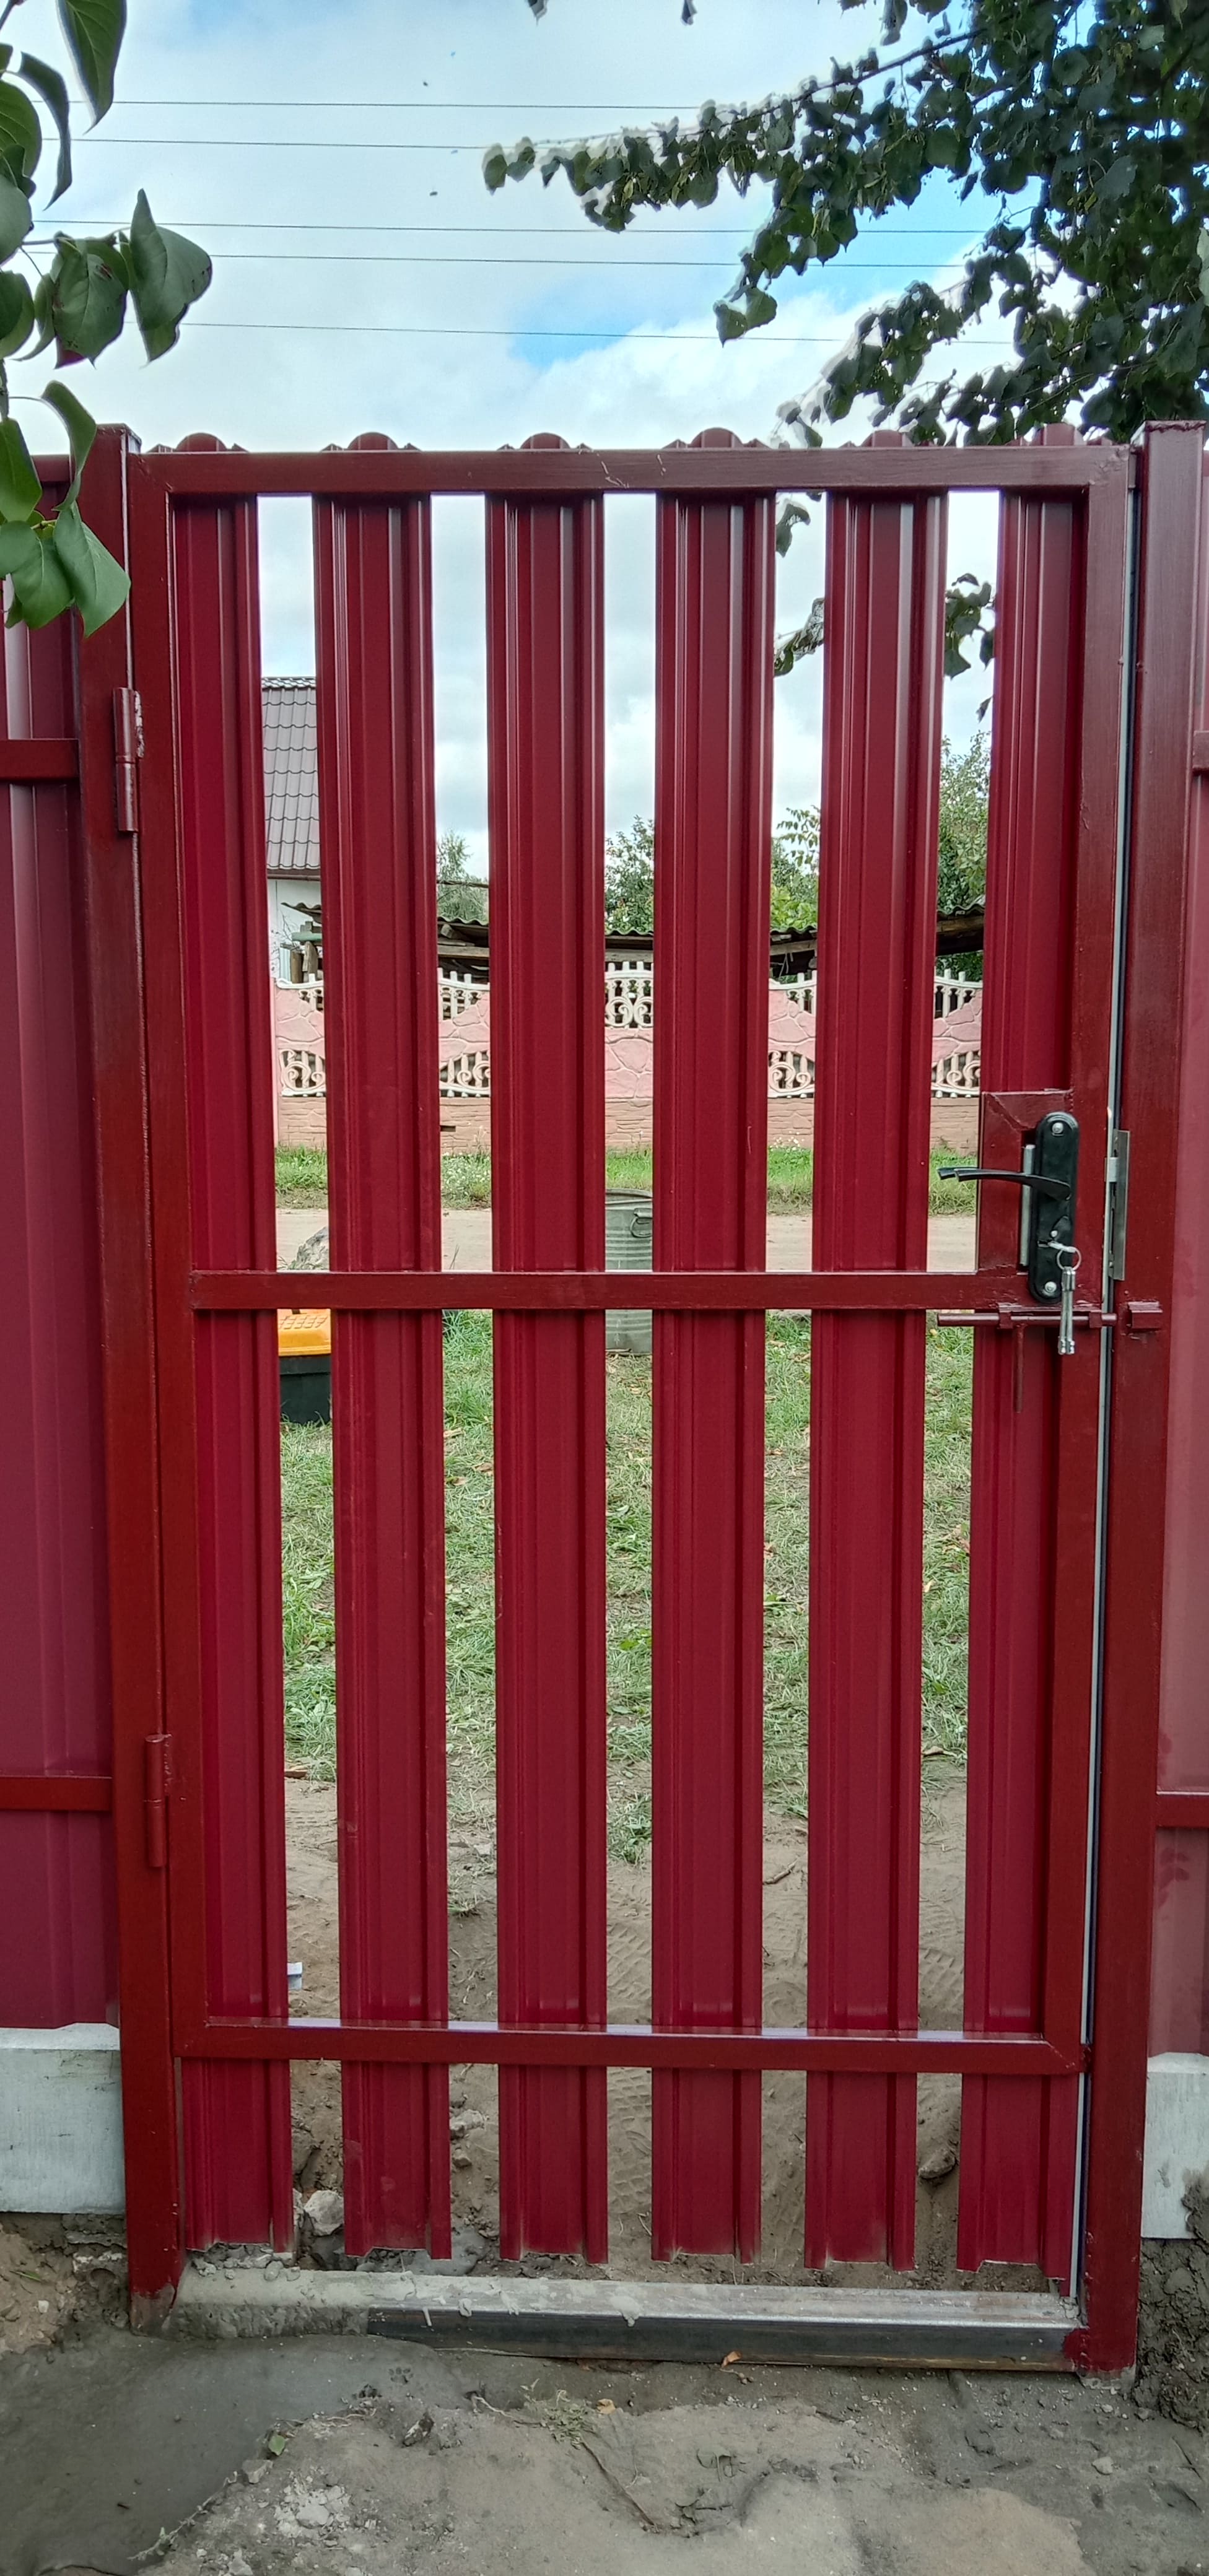 Забор из металлопрофиля (красное вино)